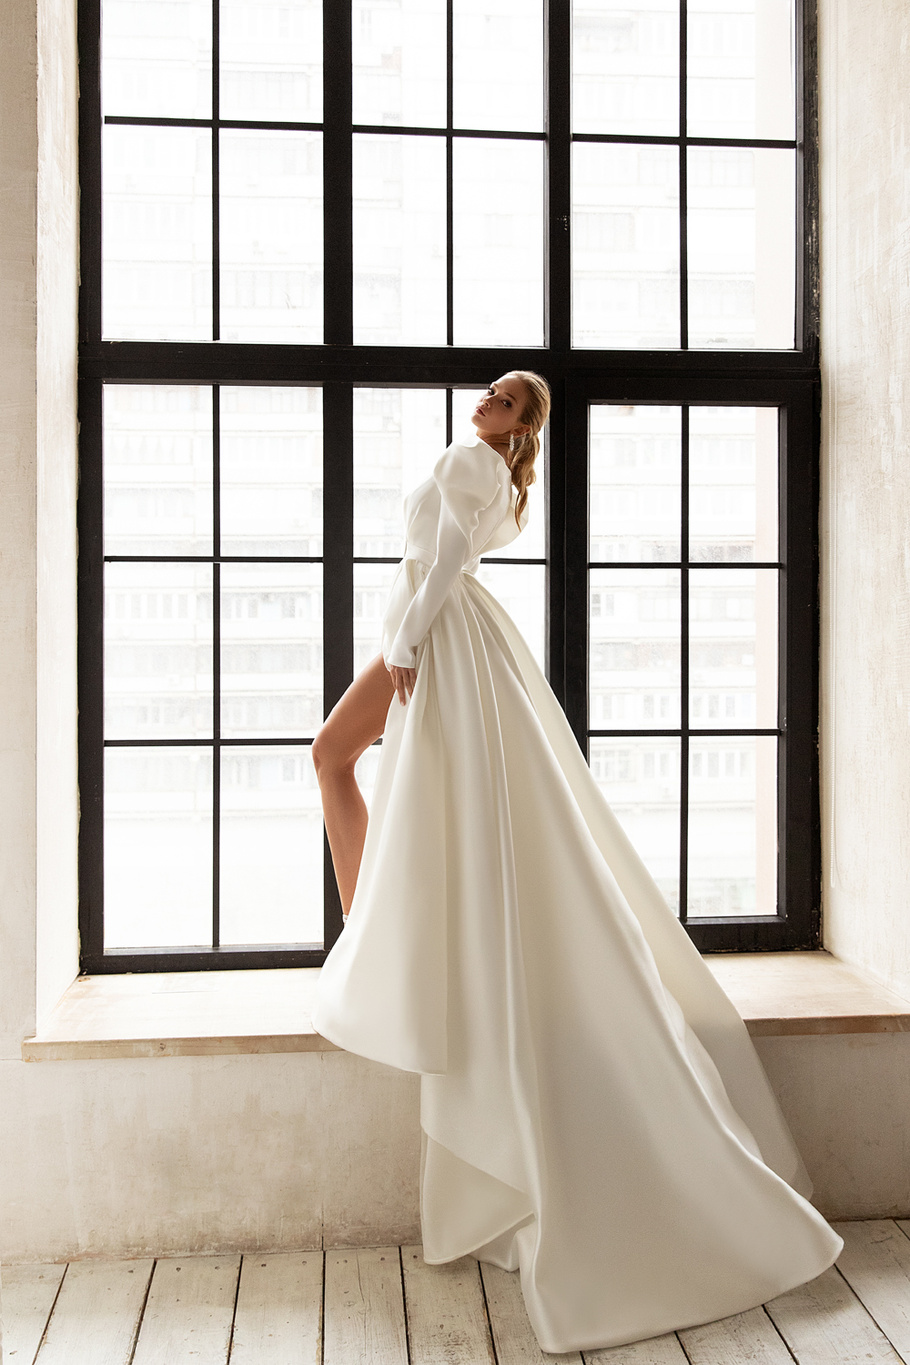 Свадебное платье «Тайра» Евы Лендел — купить в Краснодаре платье Тайра из коллекции "Меньше значит больше"2021